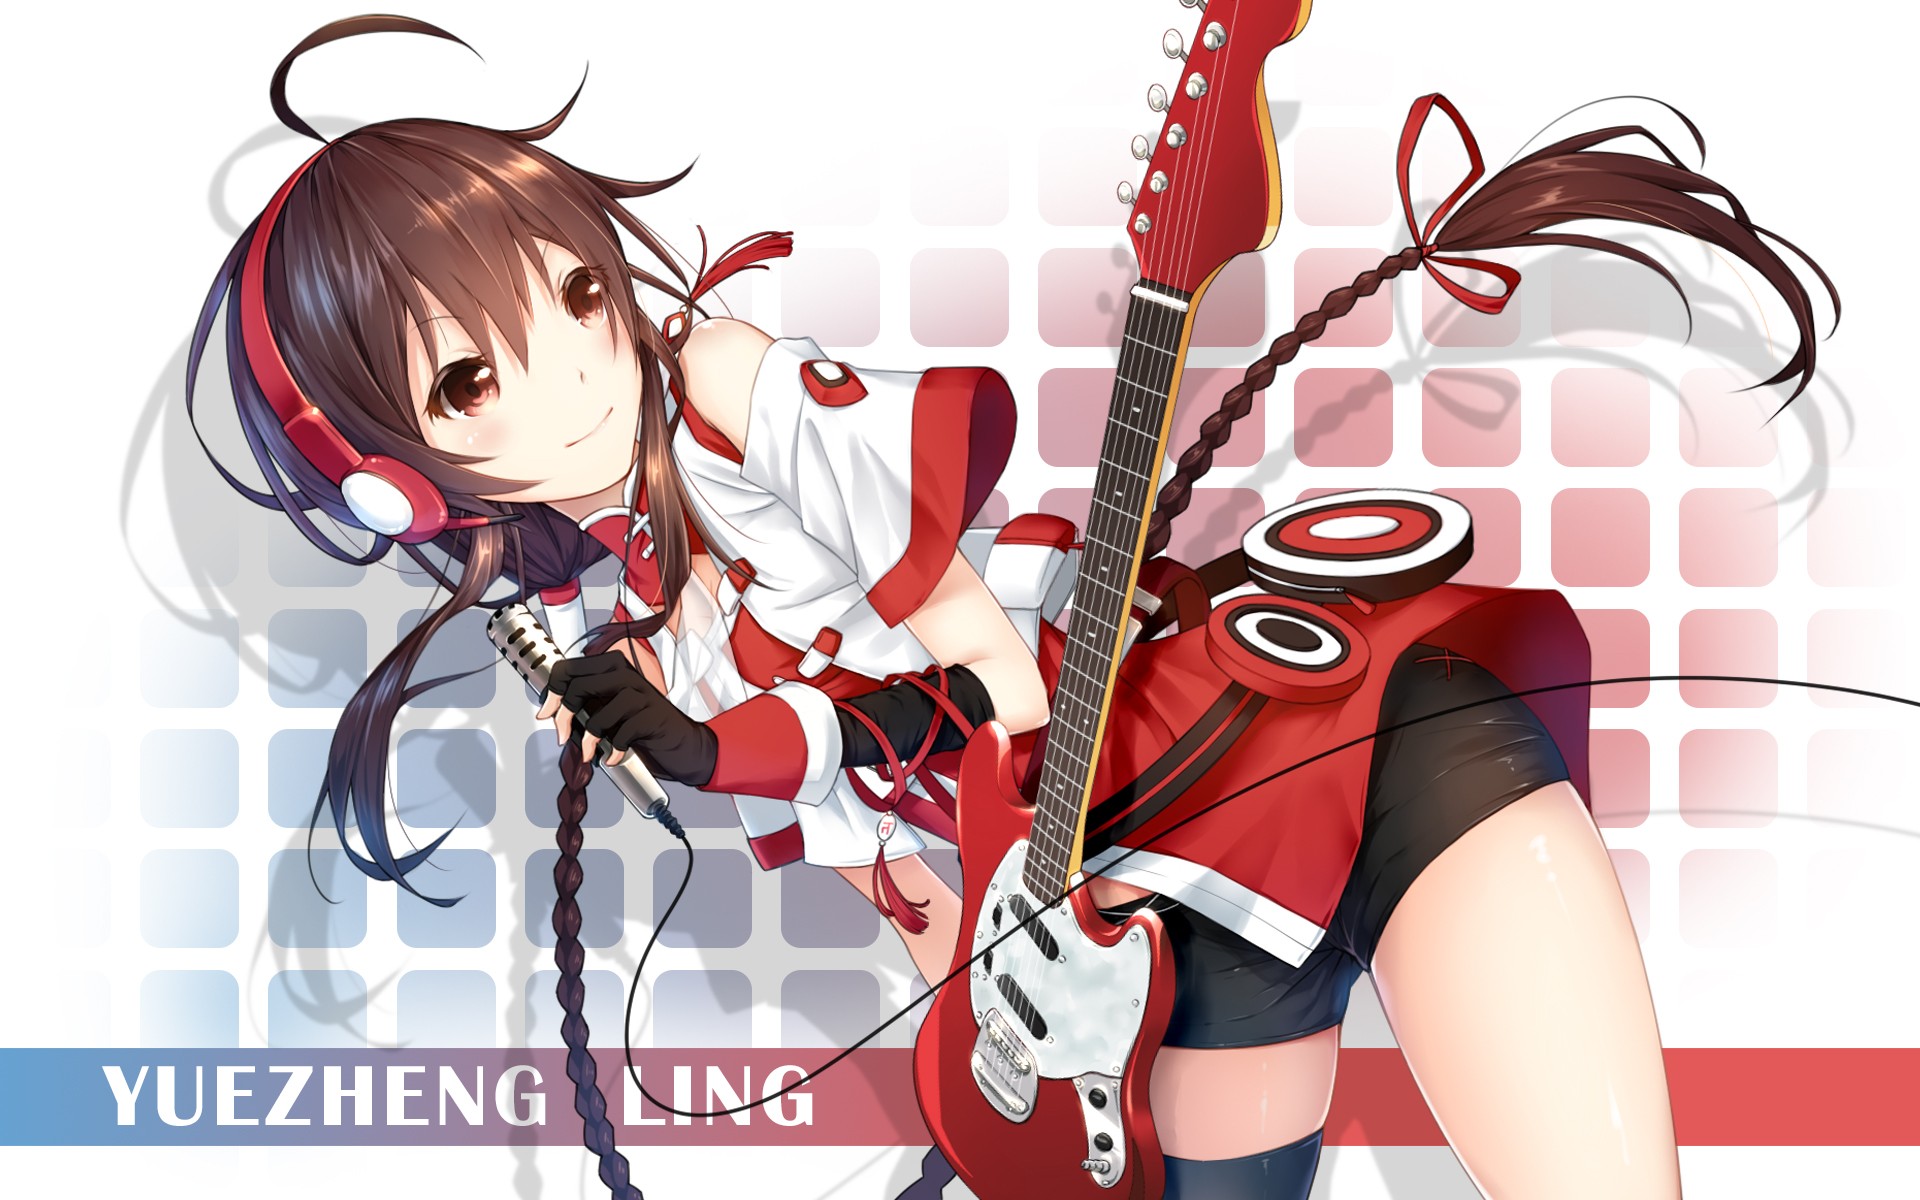 Anime Girls Vocaloid Yuezheng Ling Braids Brunette Brown Eyes Gloves Guitar Headphones Musical Instr 1920x1200